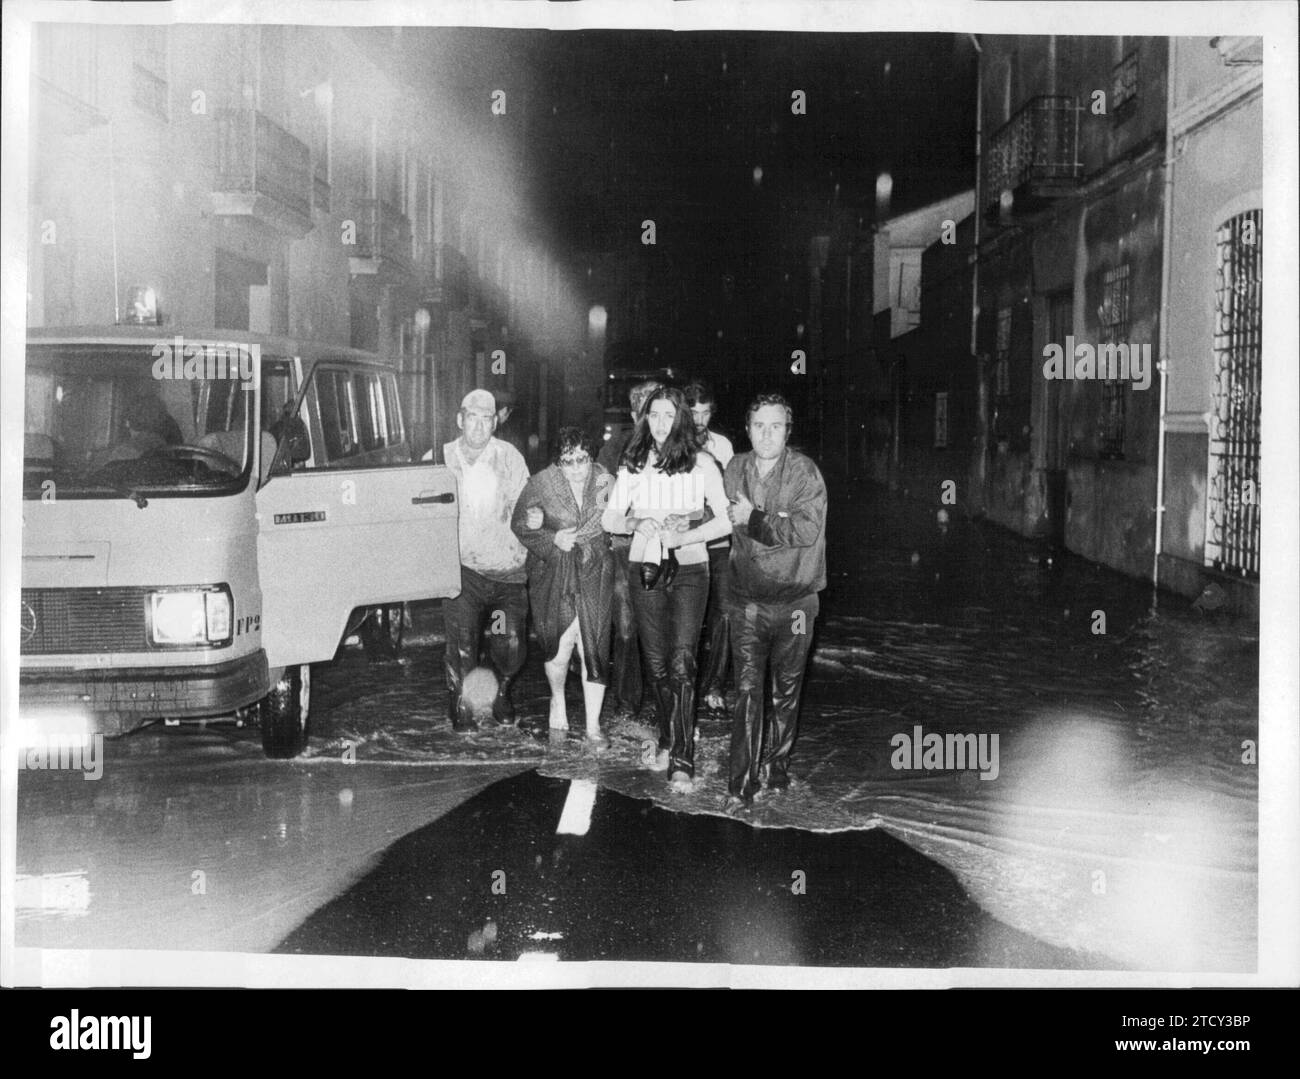 Valencia: Überschwemmungen im Oktober 1982. Evakuierung der Betroffenen. Quelle: Album/Archivo ABC Stockfoto